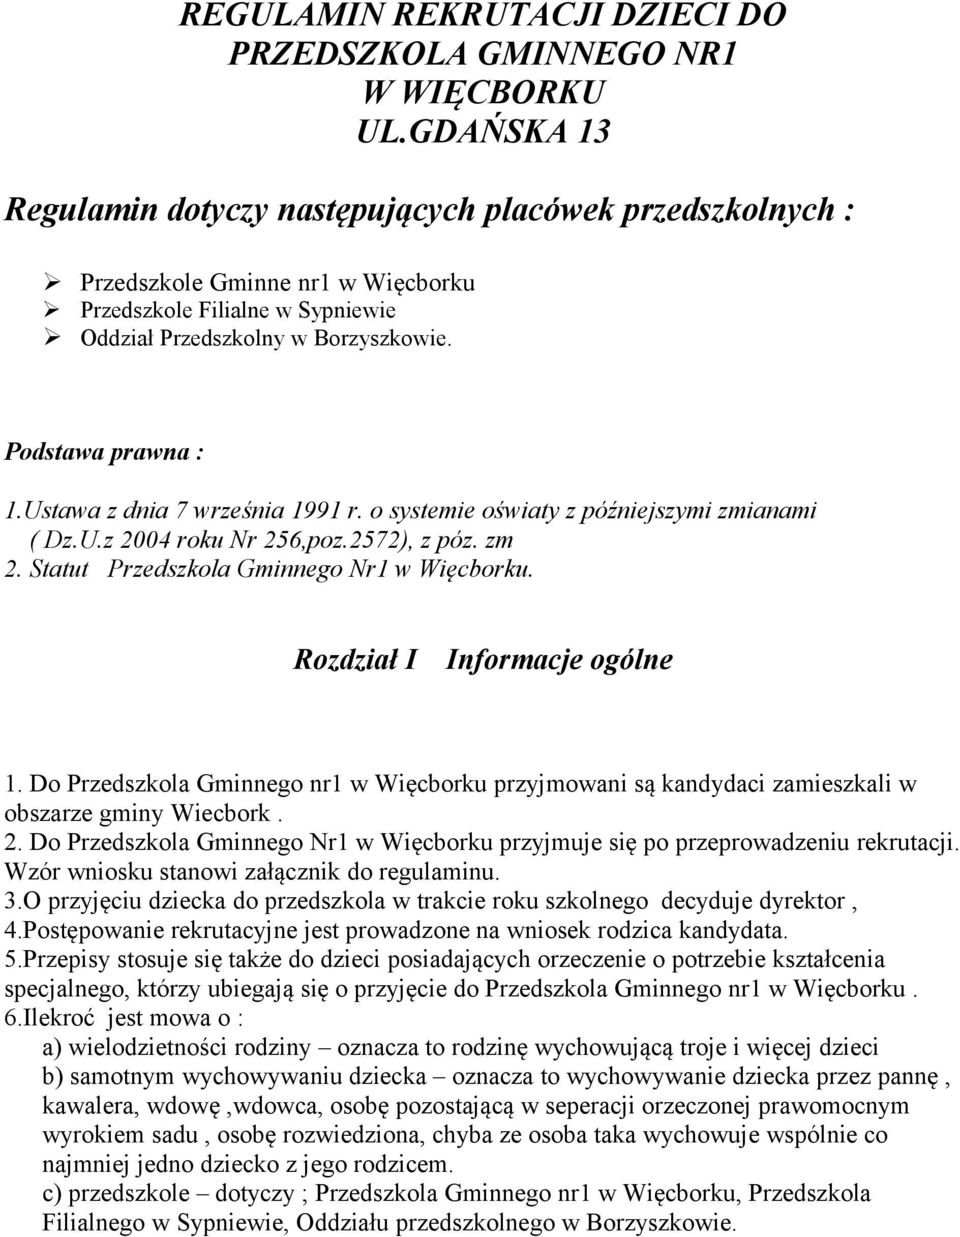 Ustawa z dnia 7 września 1991 r. o systemie oświaty z późniejszymi zmianami ( Dz.U.z 2004 roku Nr 256,poz.2572), z póz. zm 2. Statut Przedszkola Gminnego Nr1 w Więcborku.